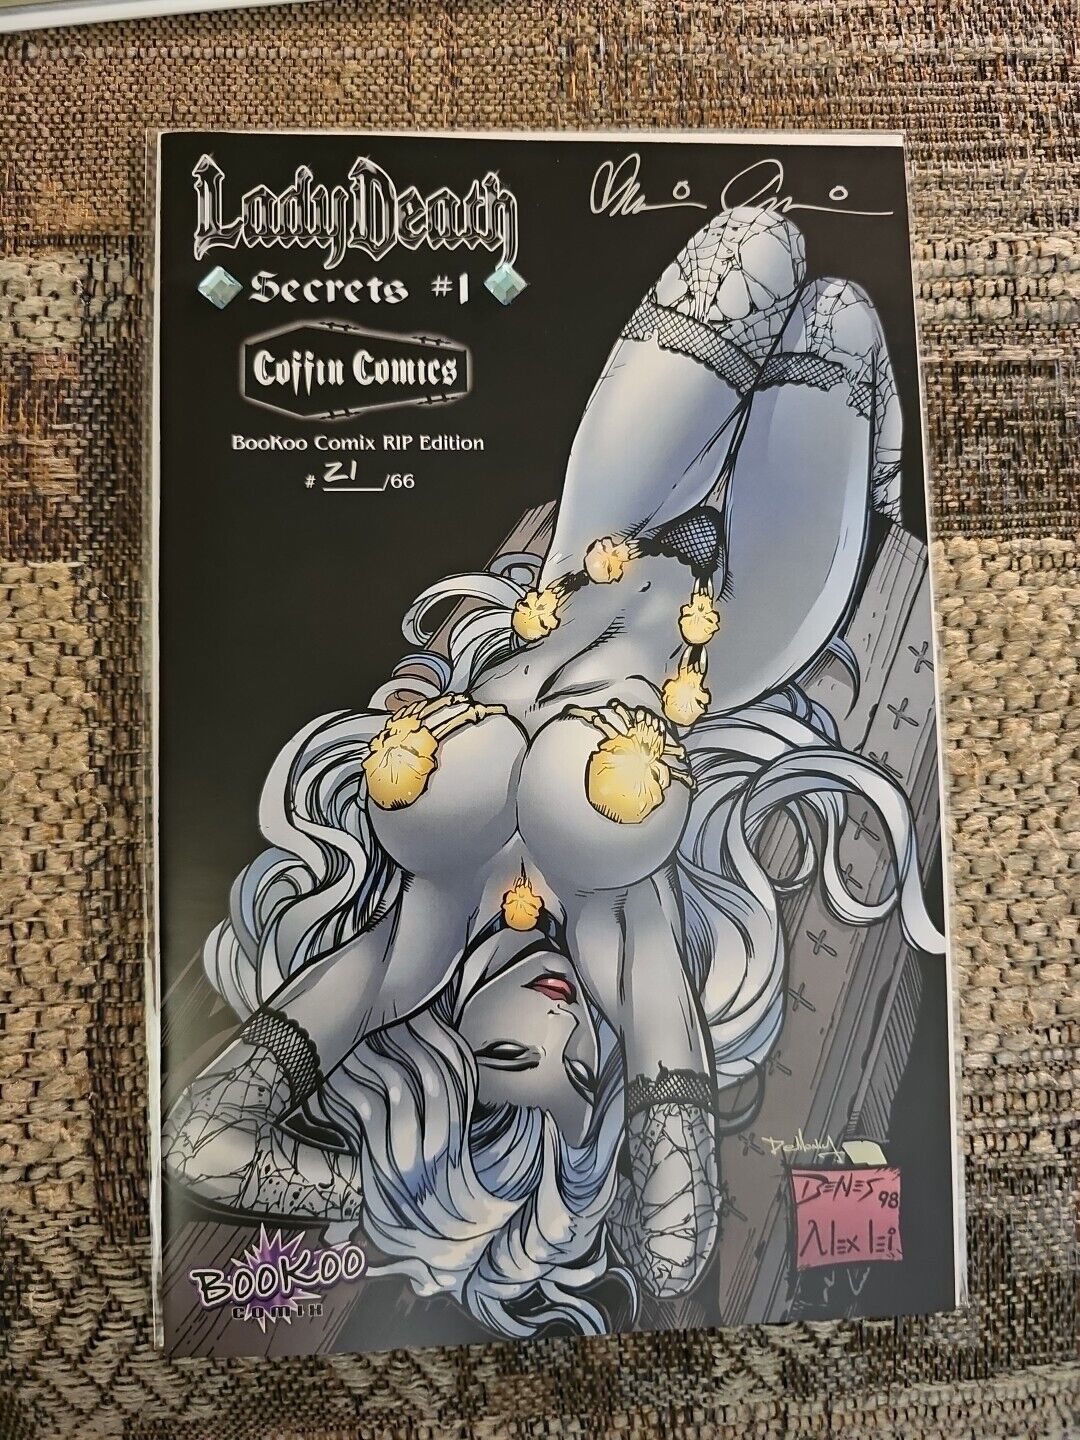 Lady Death Secrets 1 Bookoo Comix RIP Ed Lim 21/66, Coffin Comics, Jeweled 